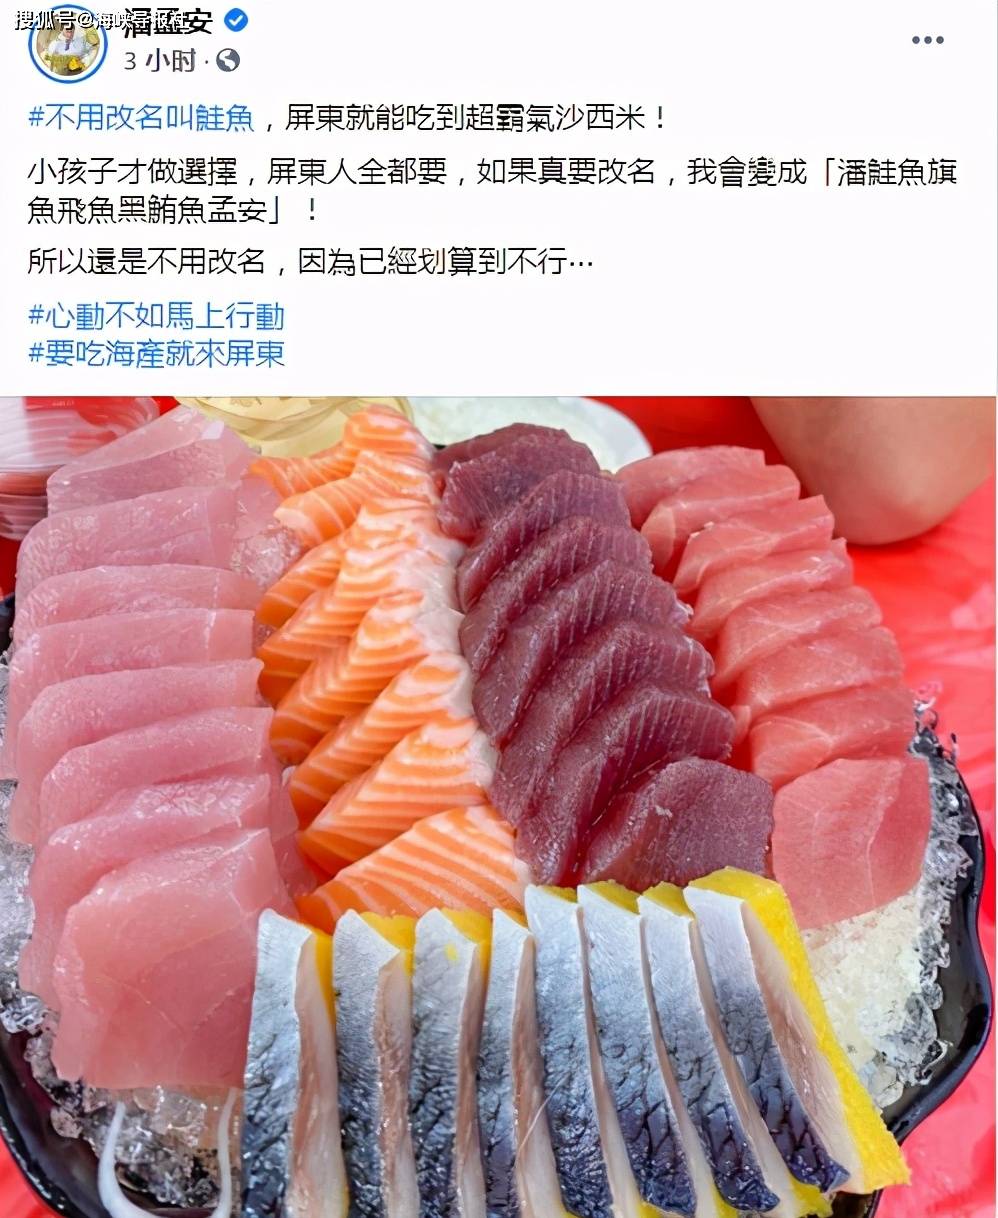 穷极无聊 台湾年轻人为免费吃寿司改名 岛内掀 三文鱼之乱 鲑鱼